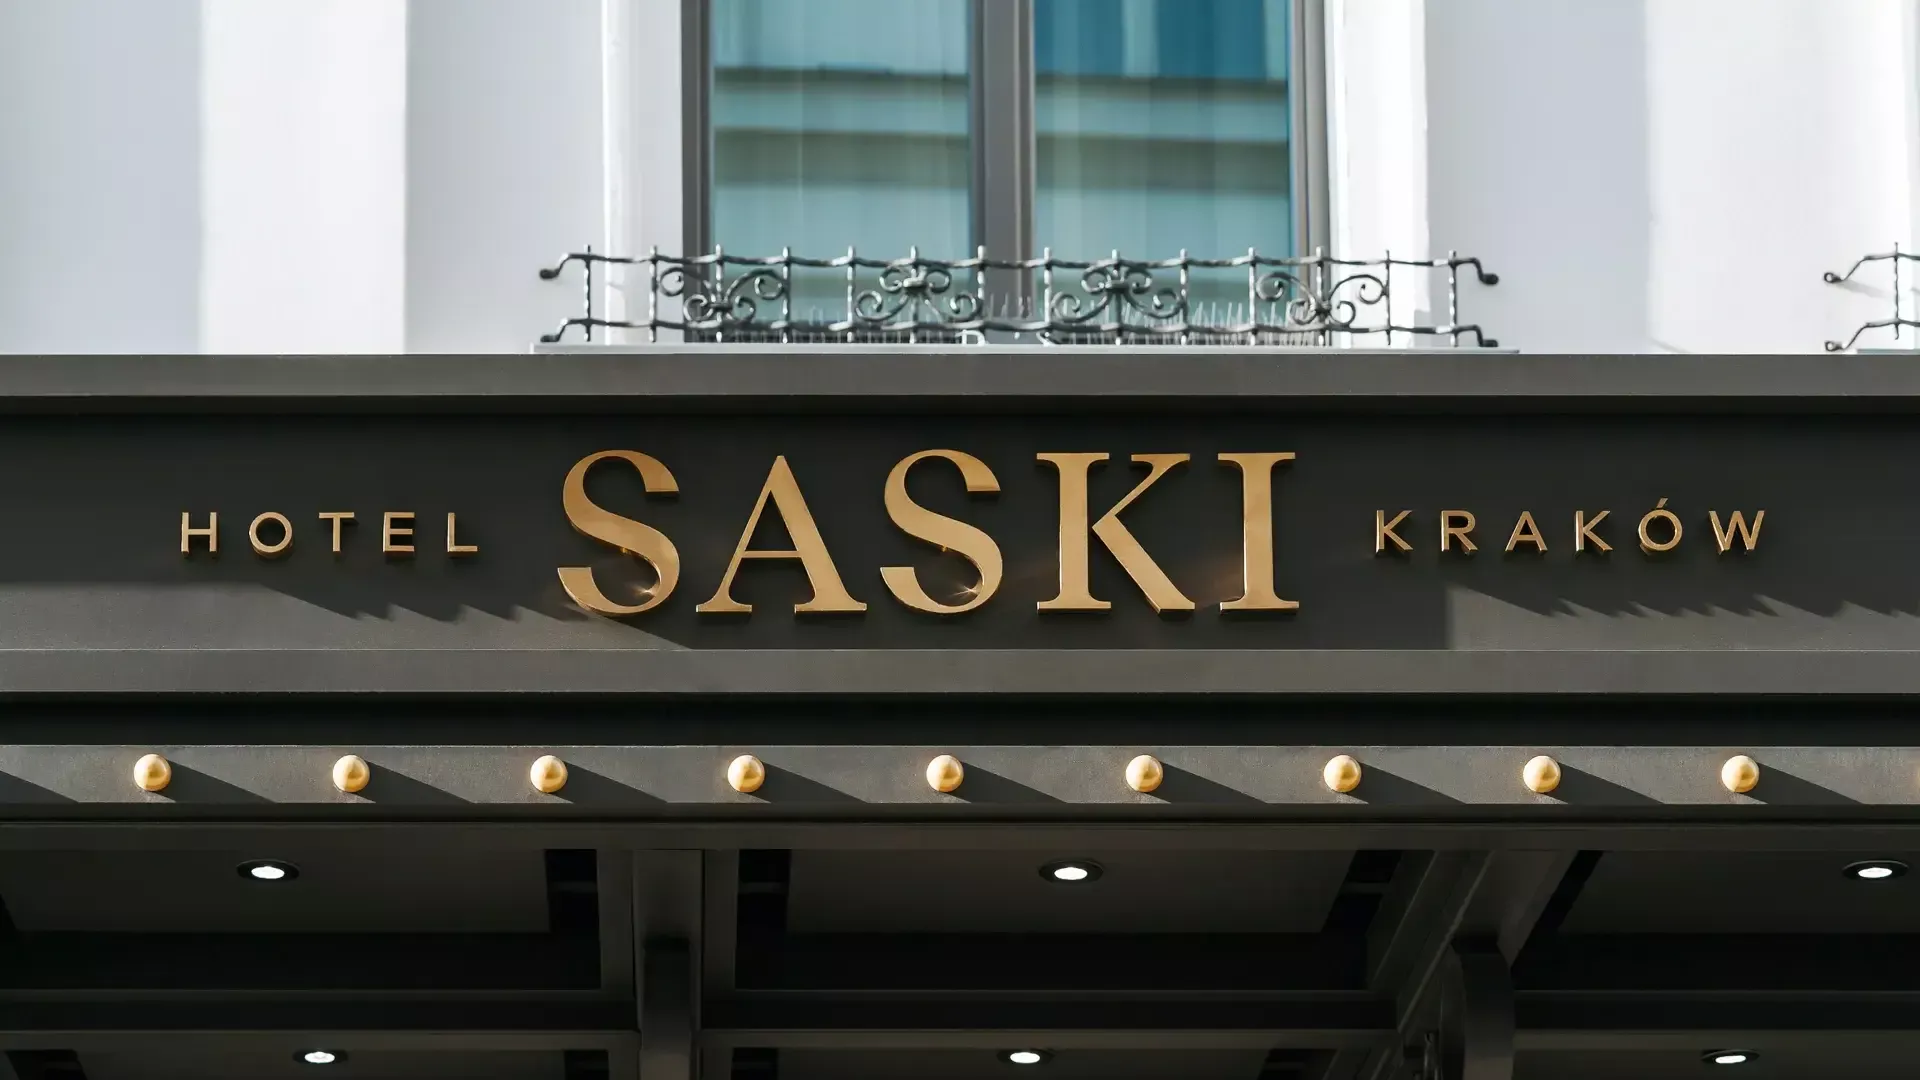 Rosenburg Hotel - Goud geborstelde roestvrijstalen letters aan de buitenkant van het Saski hotelgebouw